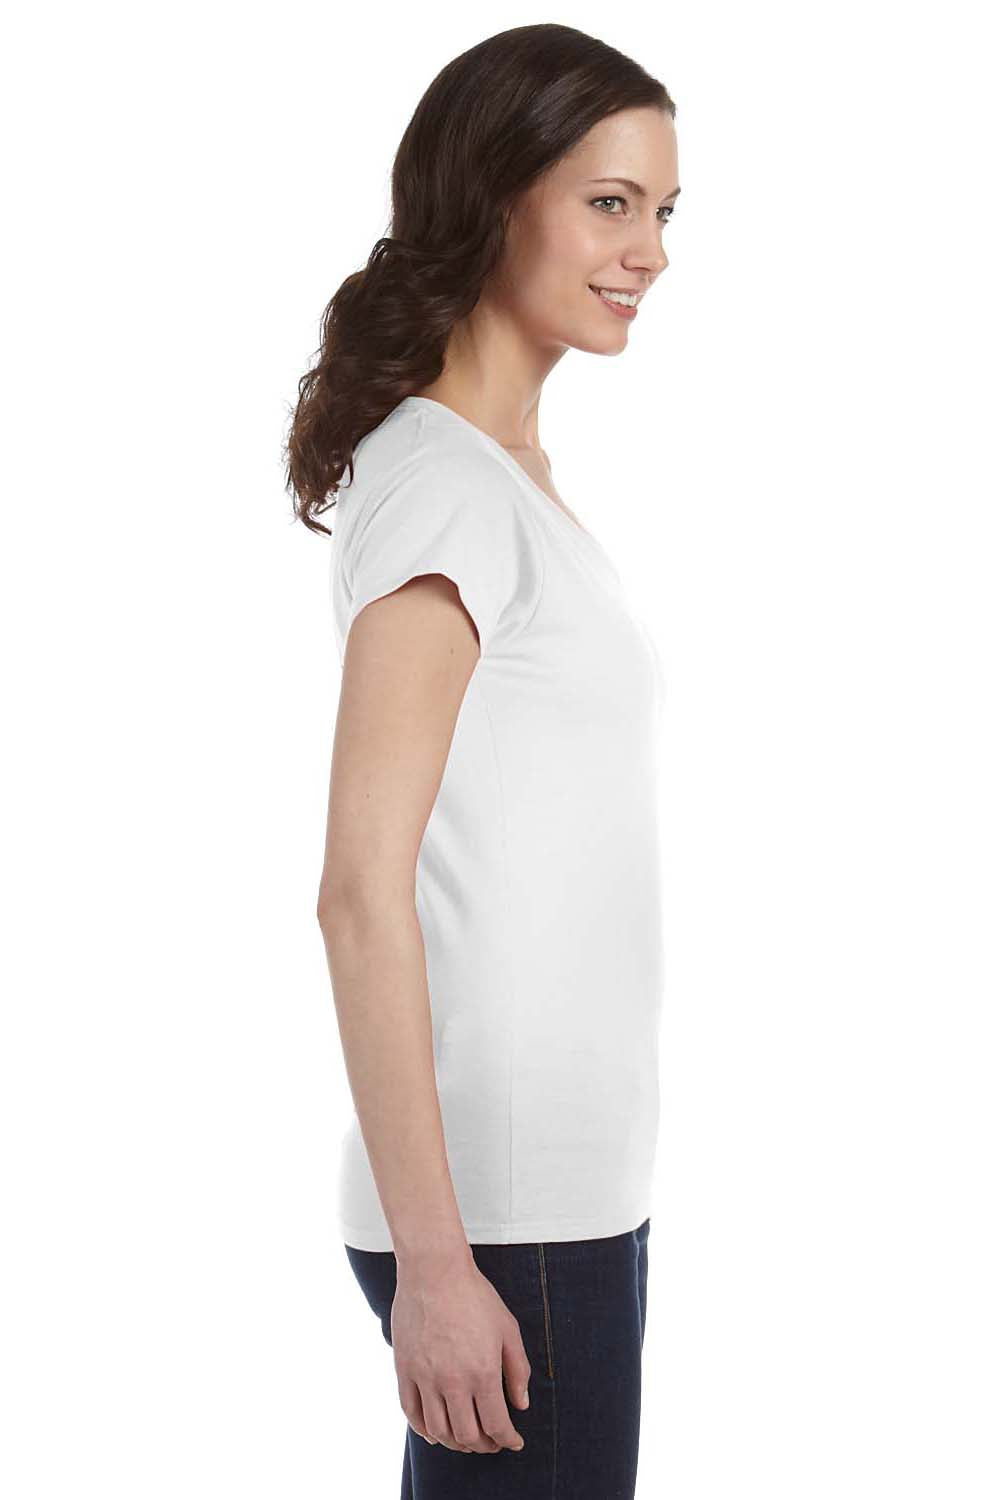 Gildan G64VL Womens Softstyle Short Sleeve V-Neck T-Shirt White Side